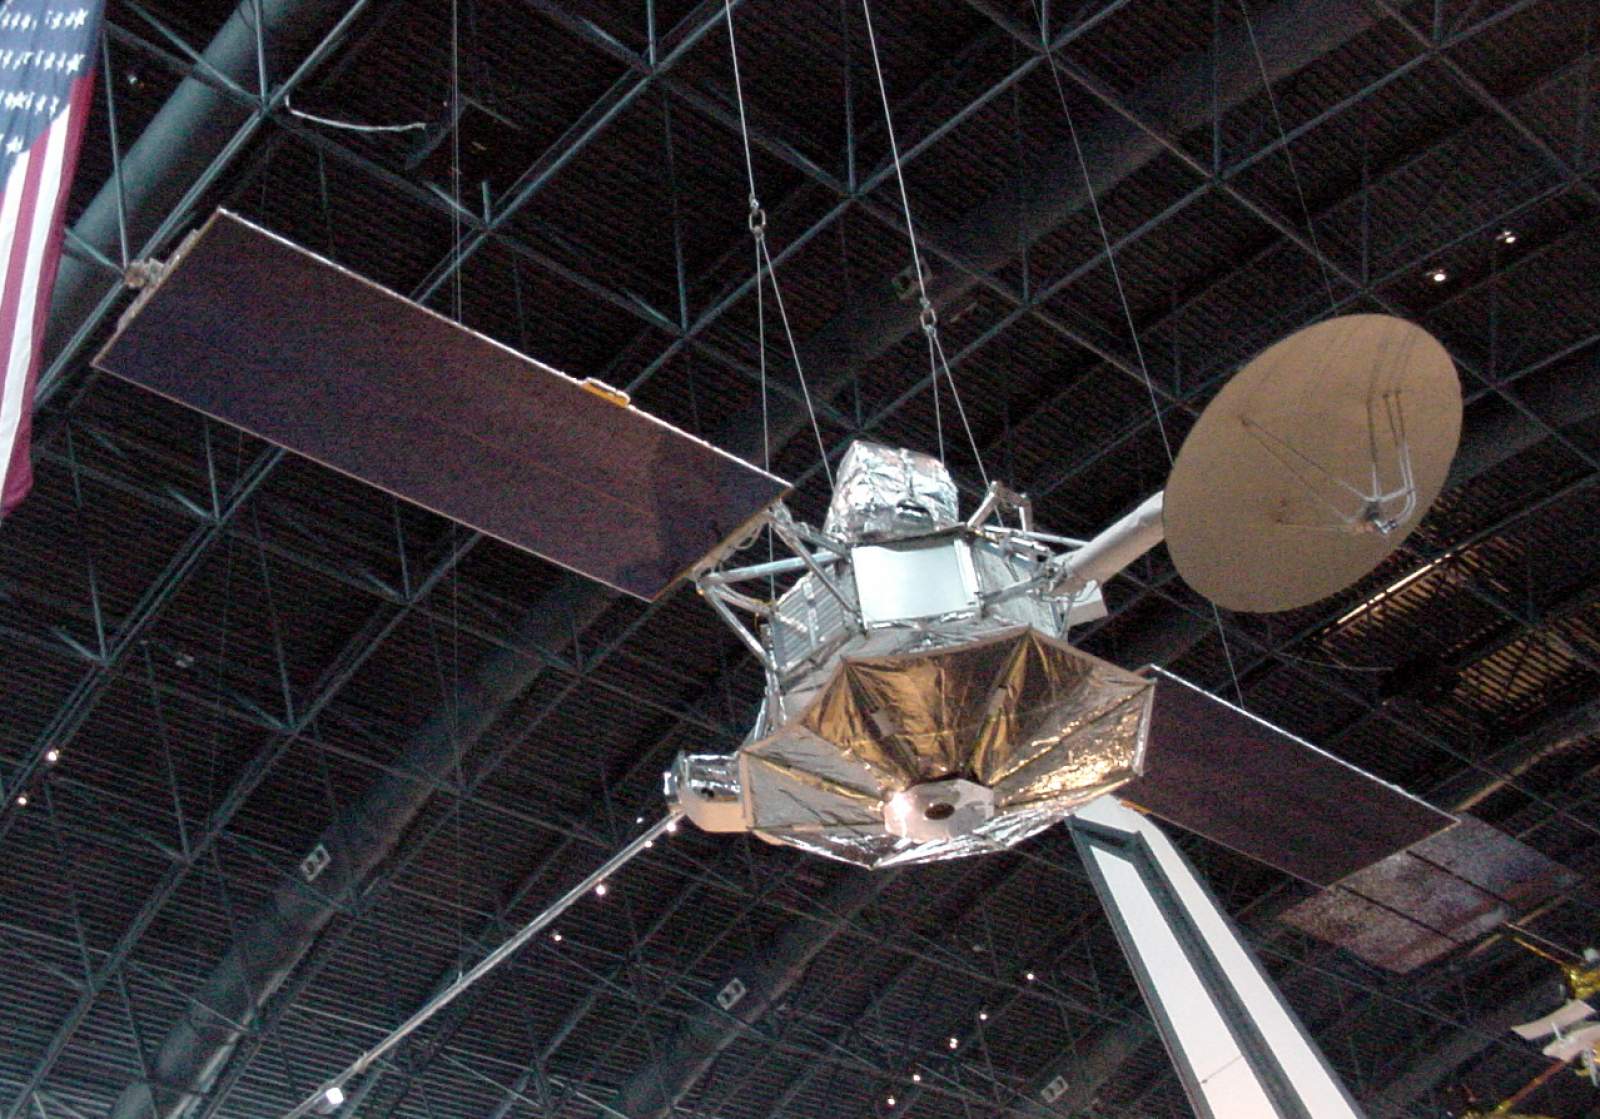 1973 NASA launches Mariner 10